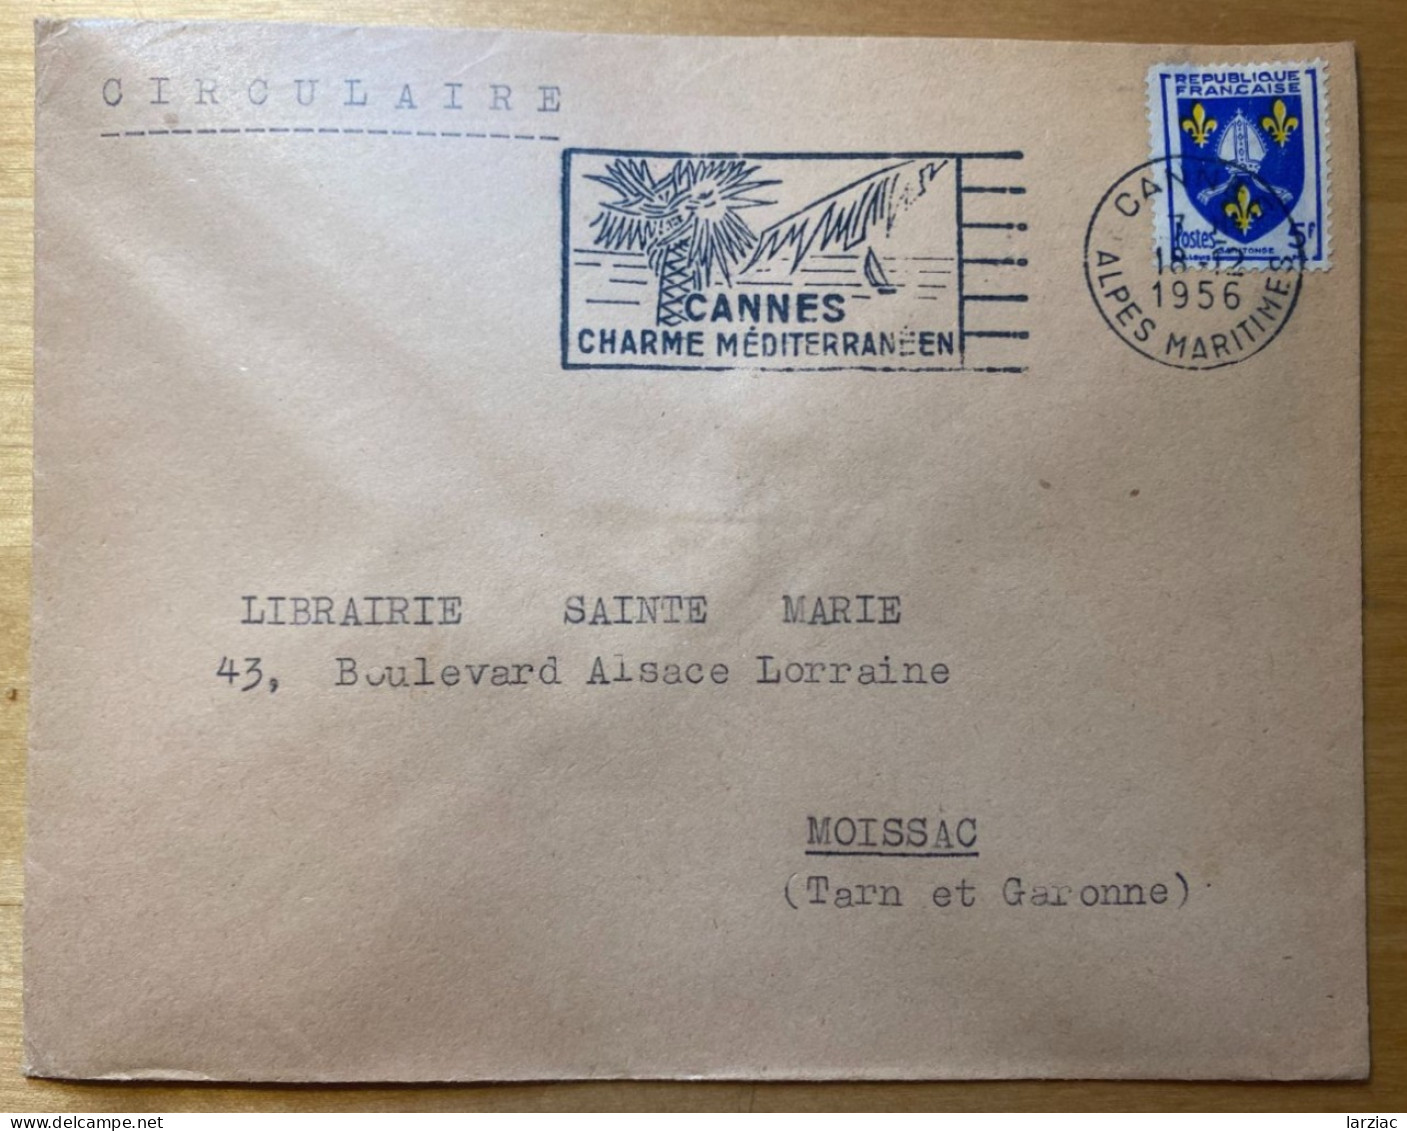 Enveloppe Affranchie Blason Saintonge Oblitération Flamme Cannes Alpes Maritimes 1956 Tarif Circulaire - Tarifs Postaux